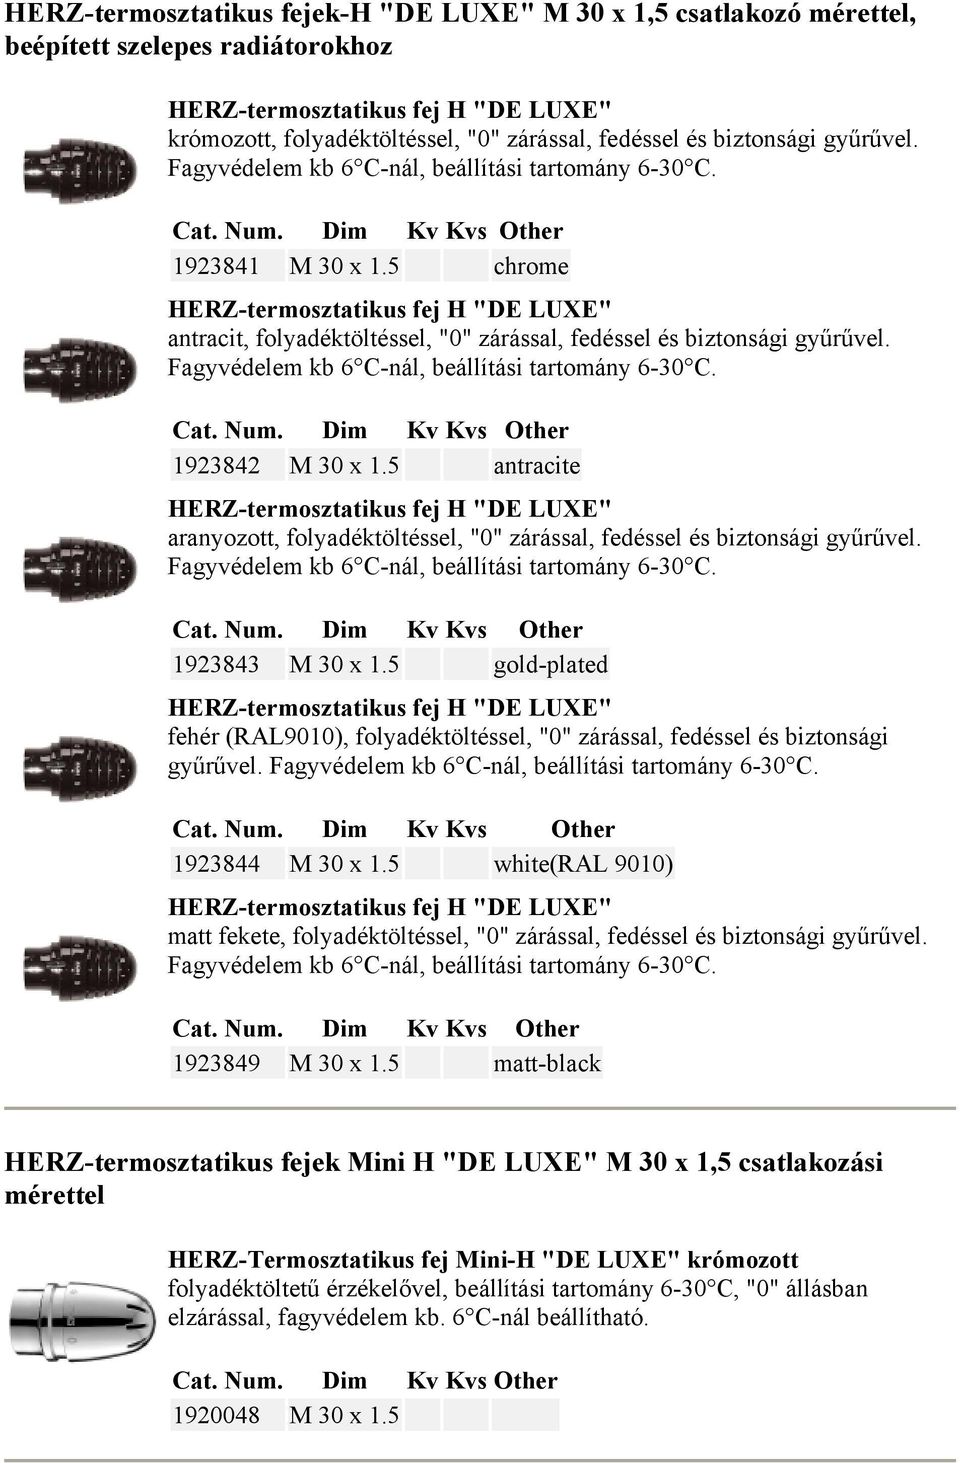 5 chrome HERZ-termosztatikus fej H "DE LUXE" antracit, folyadéktöltéssel, "0" zárással, fedéssel és biztonsági gyűrűvel. Fagyvédelem kb 6 C-nál, beállítási tartomány 6-30 C. 1923842 M 30 x 1.